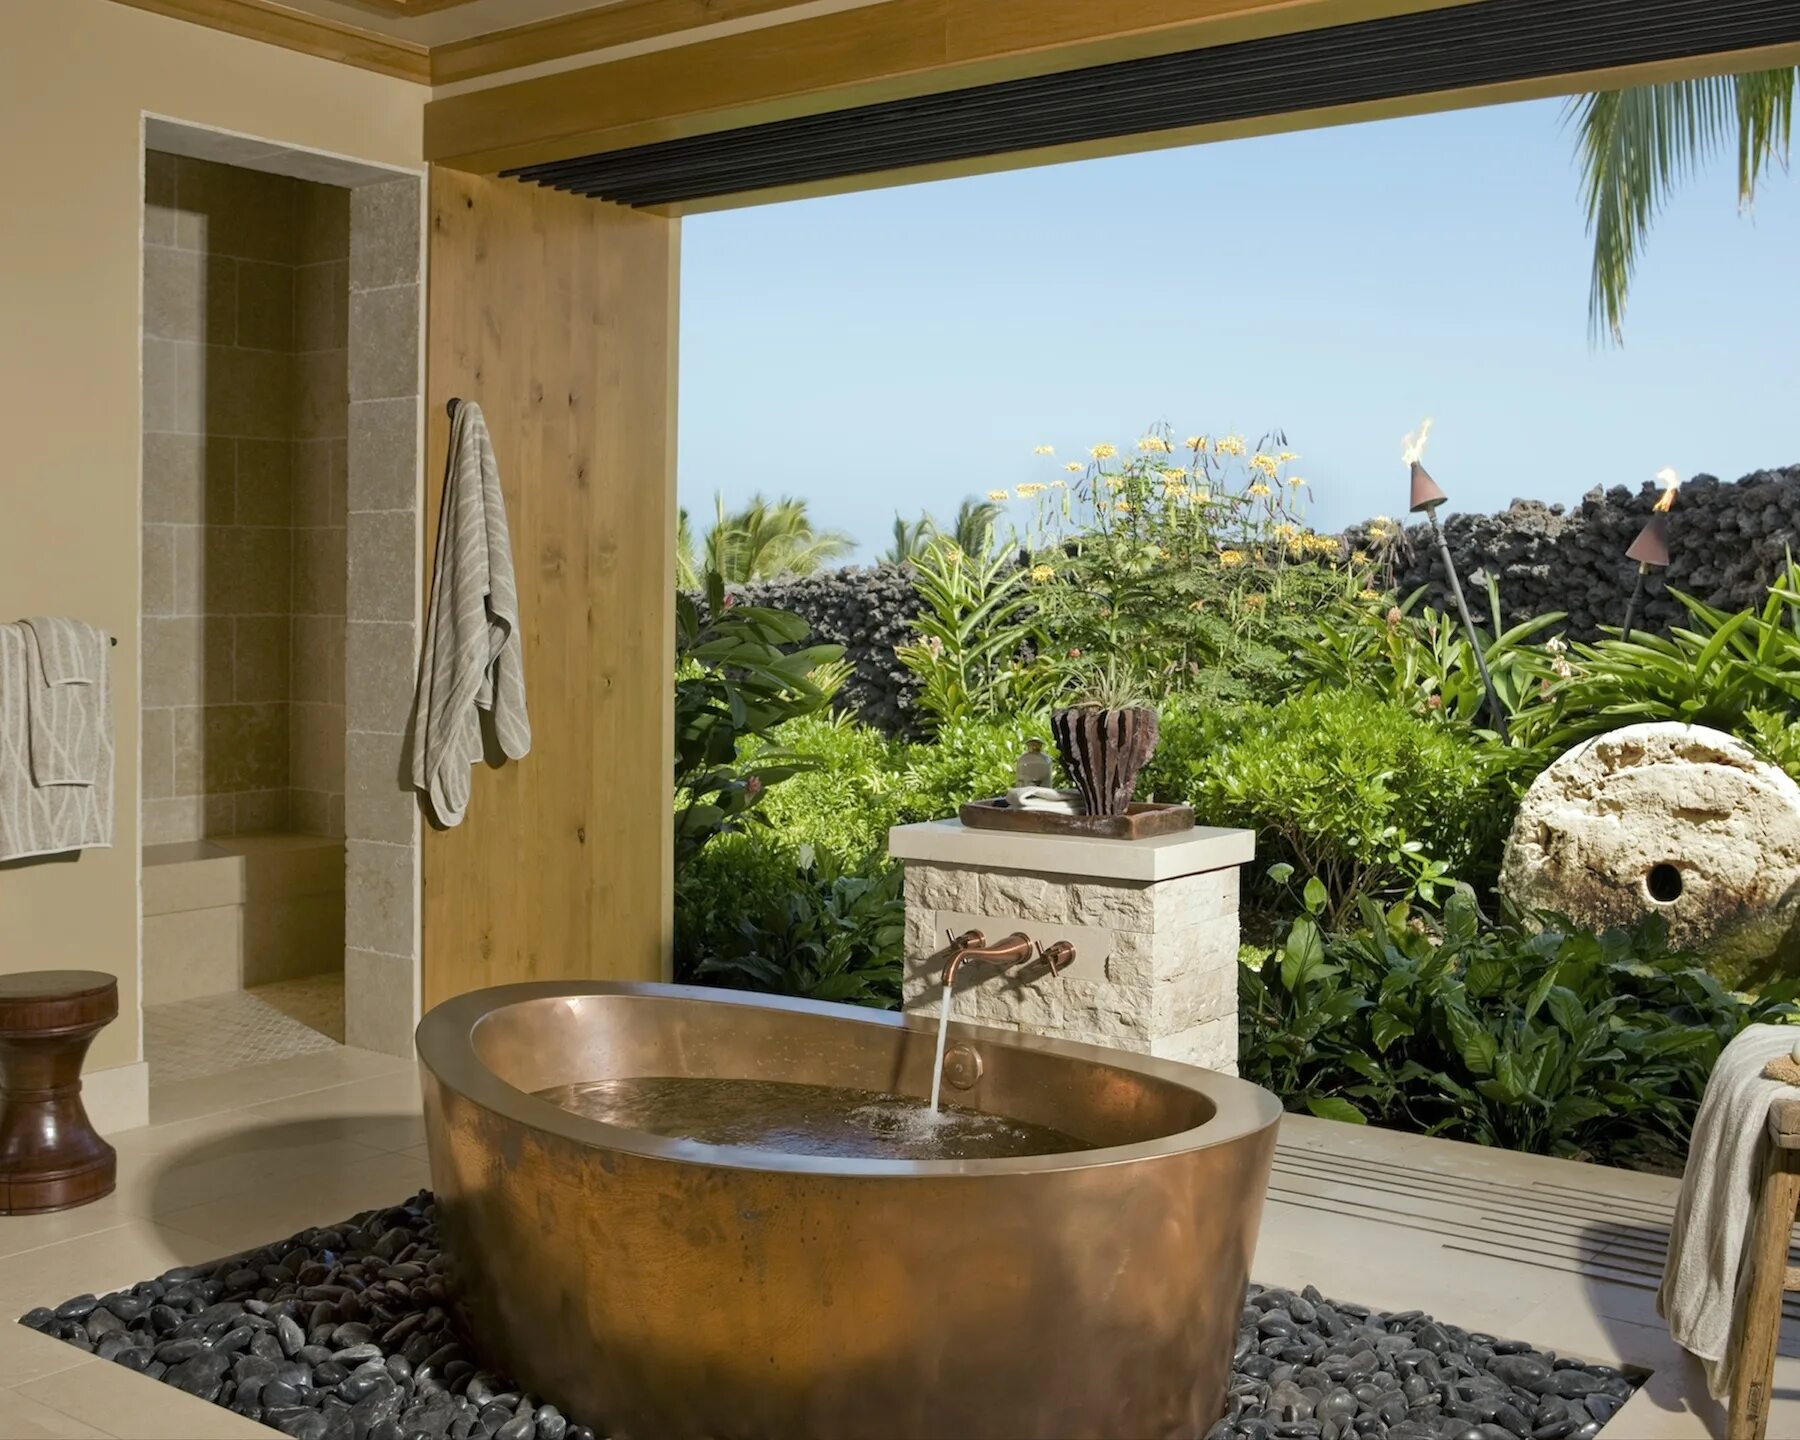 Ванна фотообои. Ванная комната в тропическом стиле. Ванная комната в стиле джунгли. Душевые в балийском стиле. Ванная в тропиках.